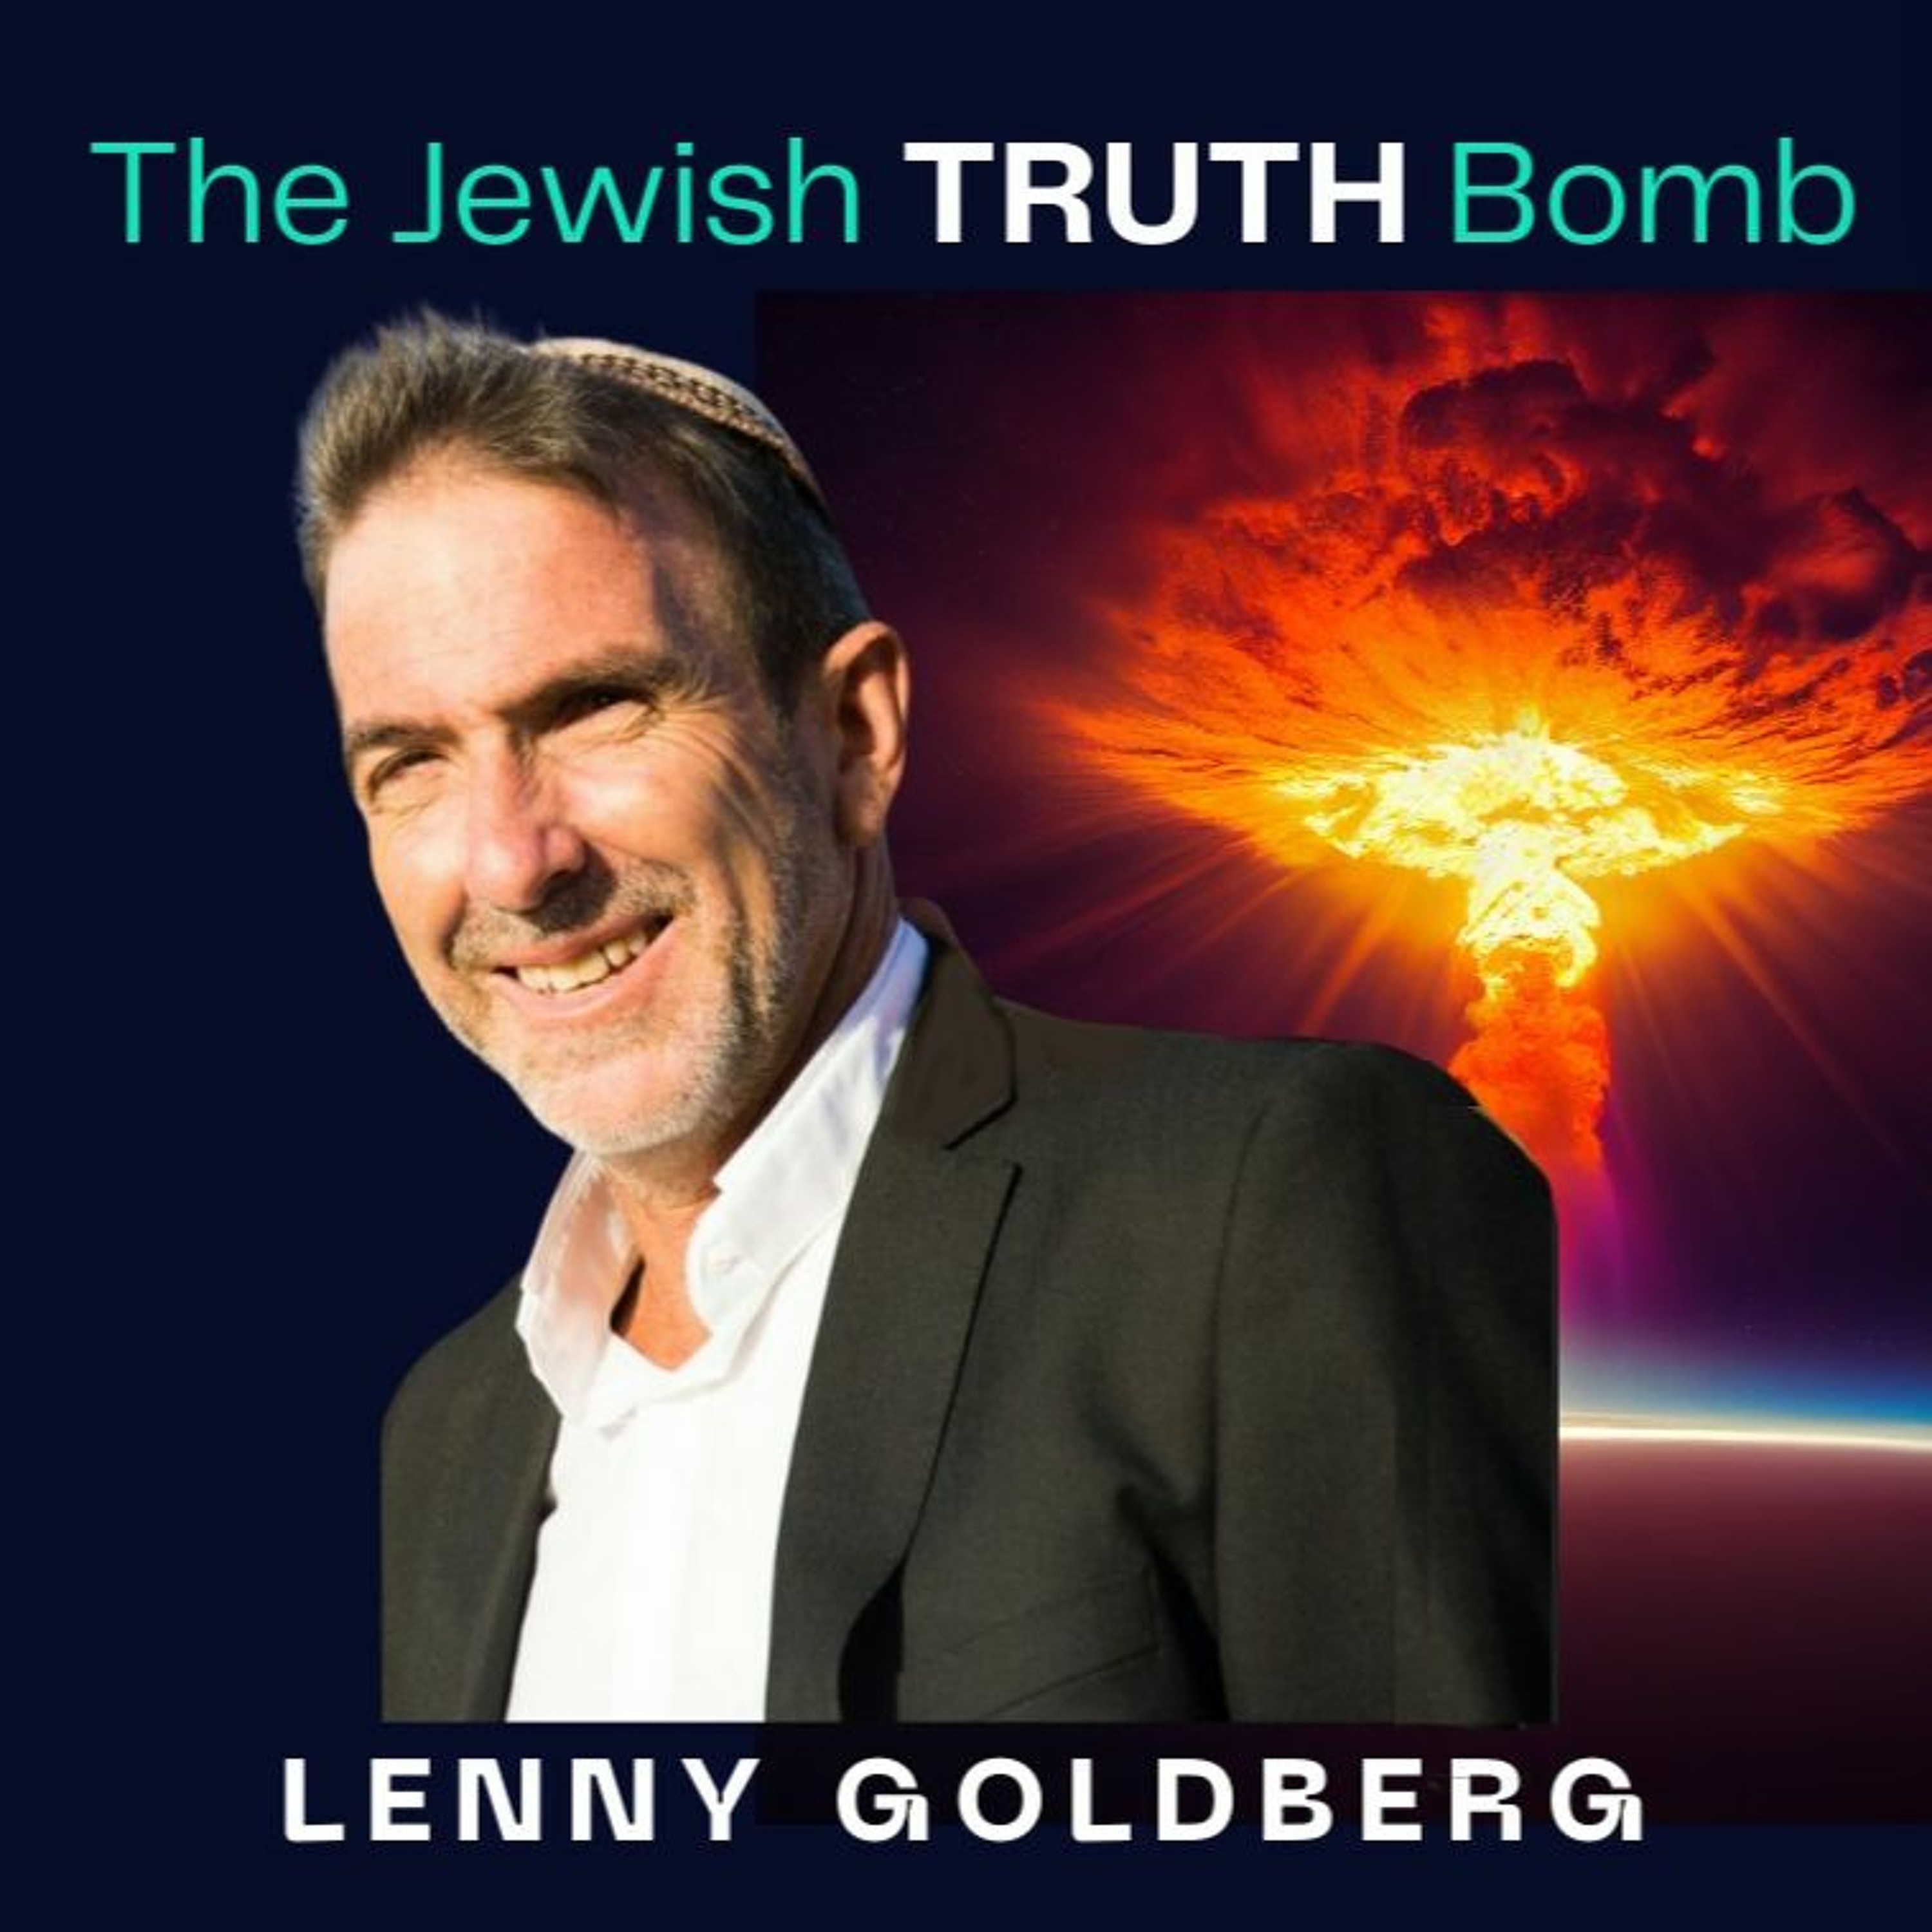 Jewish Mishpat, IDF Rot - The Jewish Truth Bomb